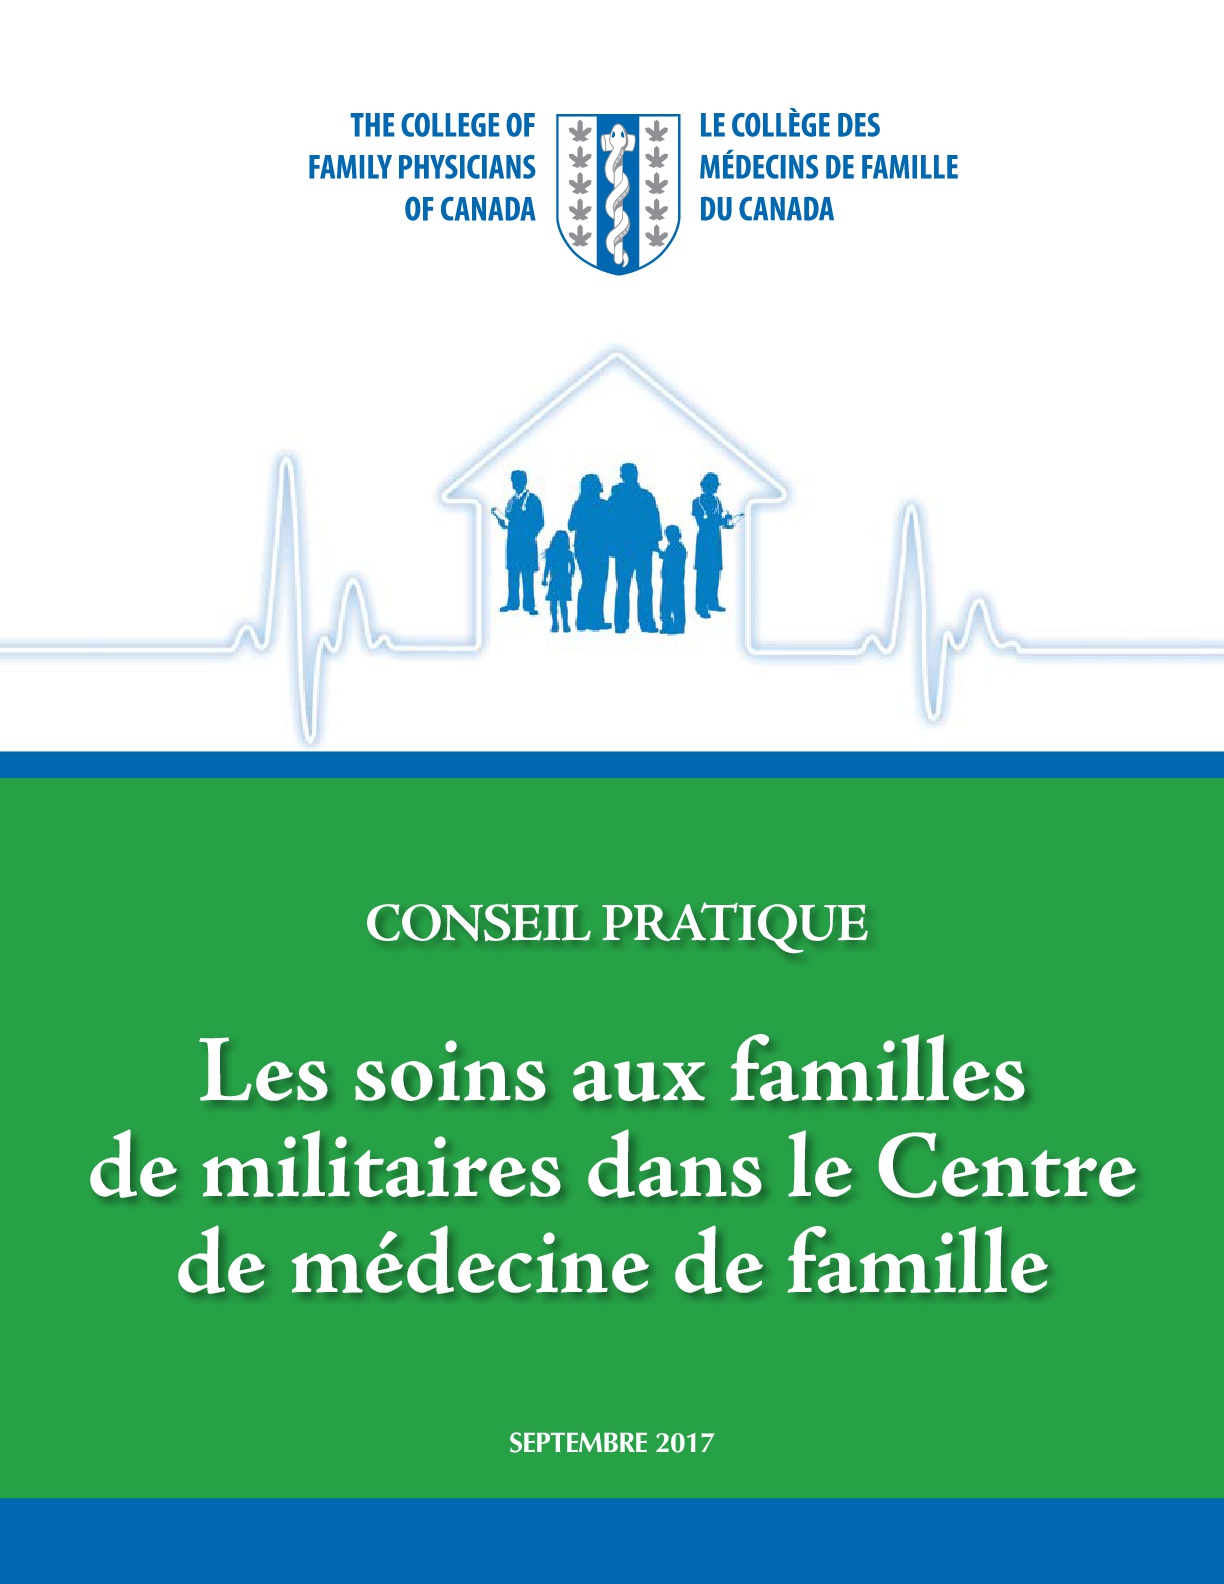 Thumbnail for Conseil pratique: Les soins aux familles de militaires dans le Centre de médecine de famille